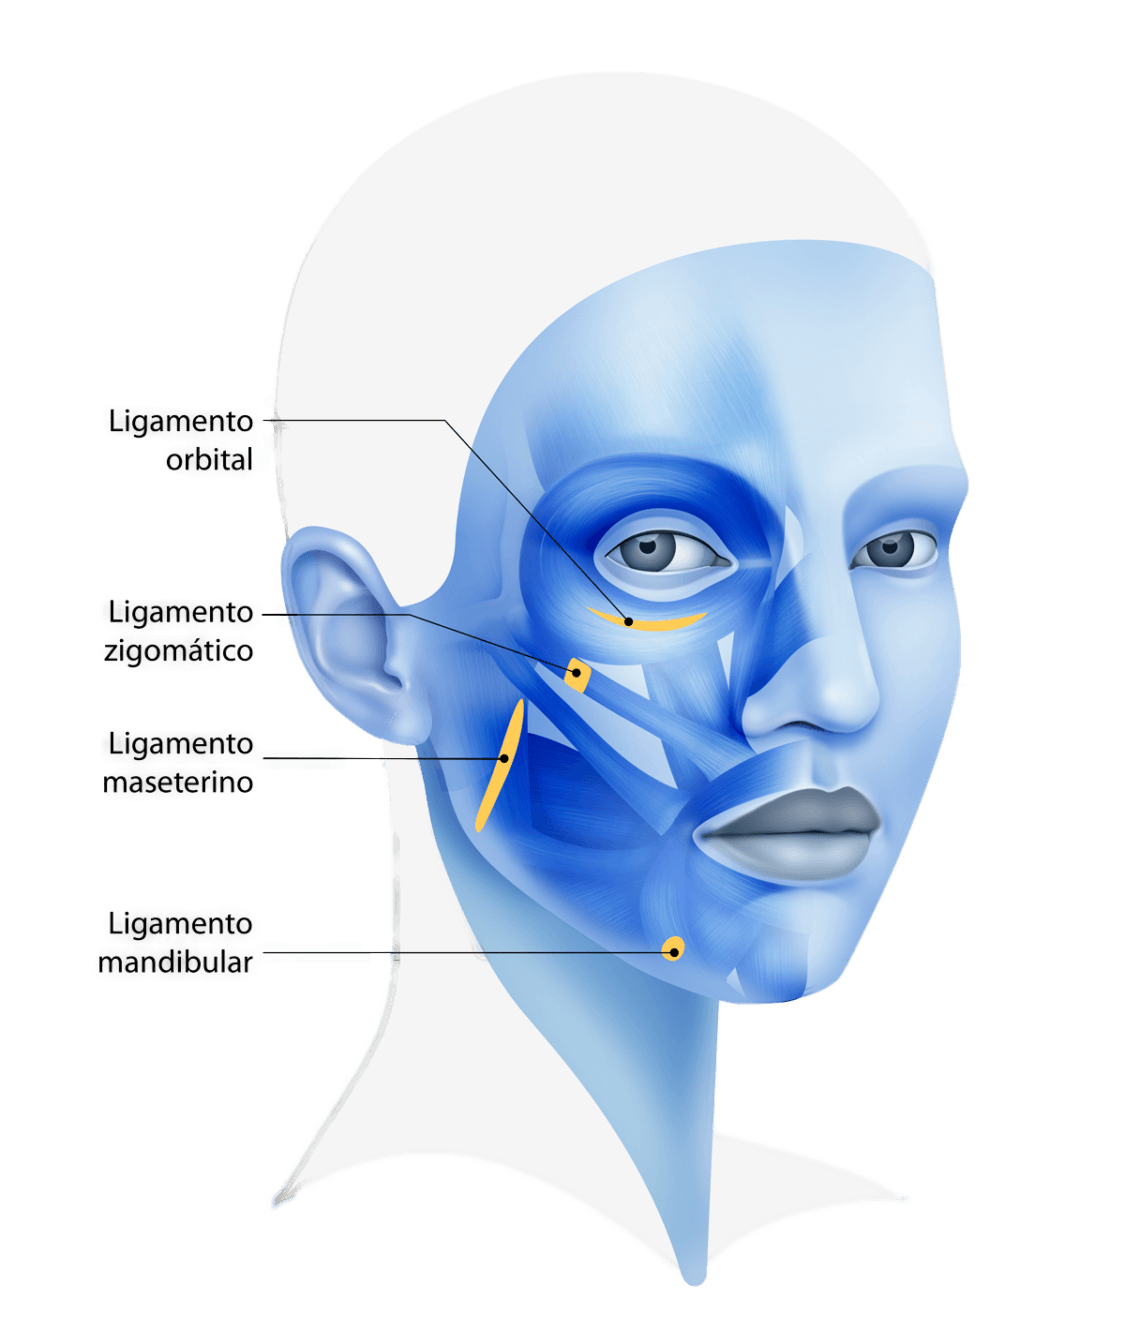 FaceTite o Lifting Facial no quirúrgico » Clínica Kam